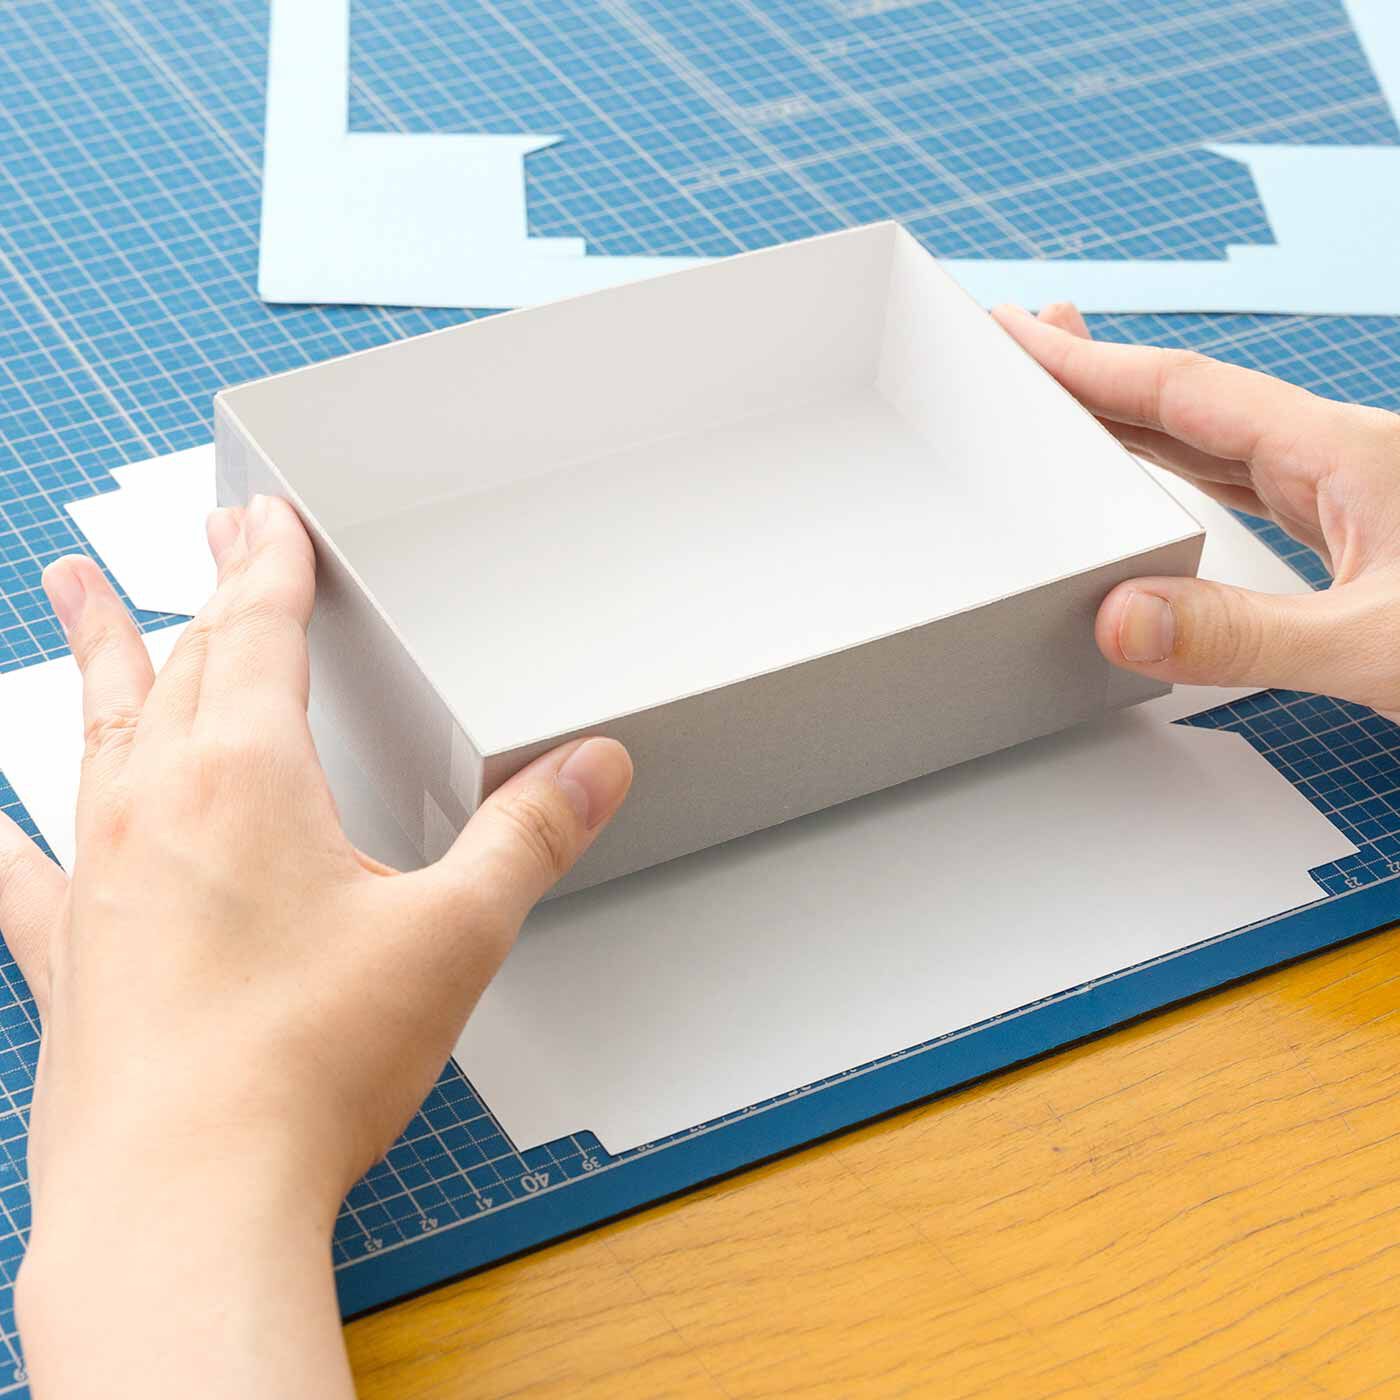 Couturier|かわいいデザインに心躍る はじめてでも簡単にできる紙箱づくりの会|カットした紙に組み立てた箱をゆっくりと貼り合わせていくだけ。